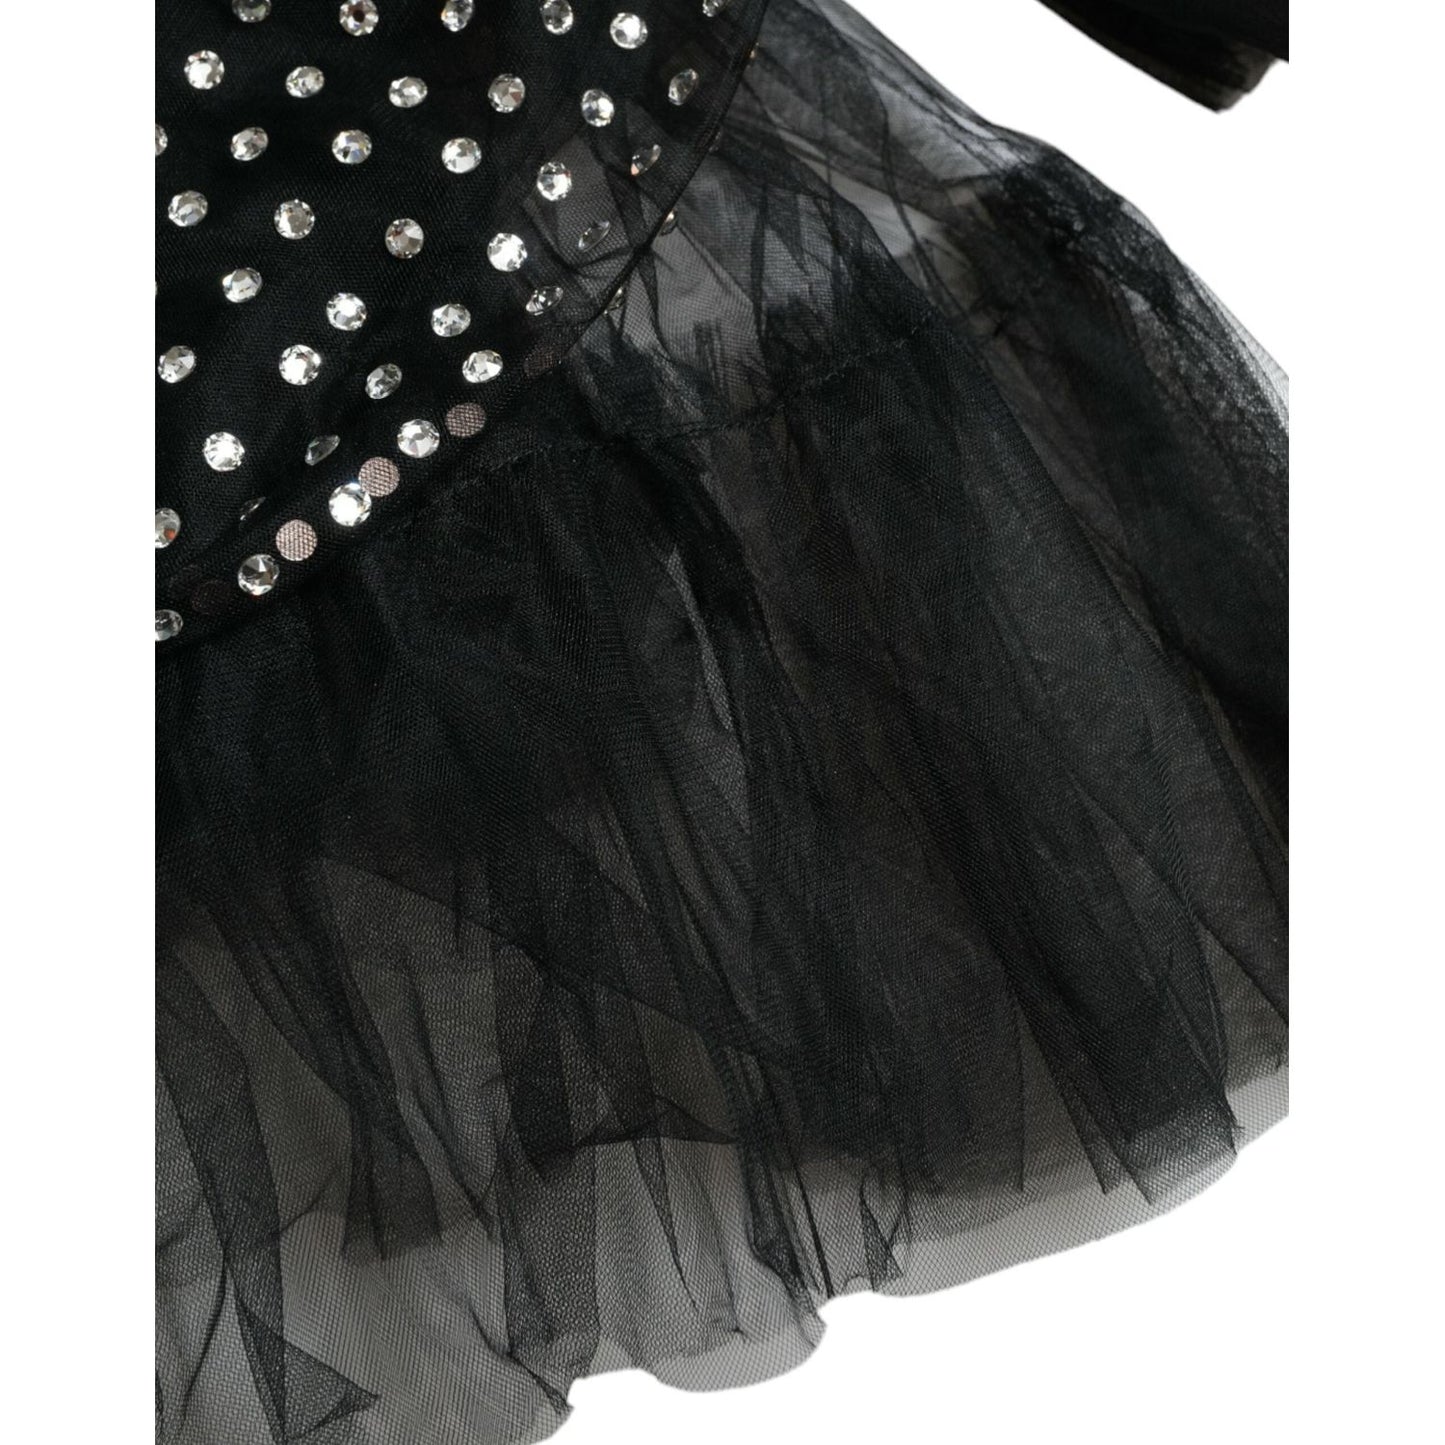 Dolce & Gabbana | Elegant Crystal-Embellished Long Black Dress| McRichard Designer Brands   